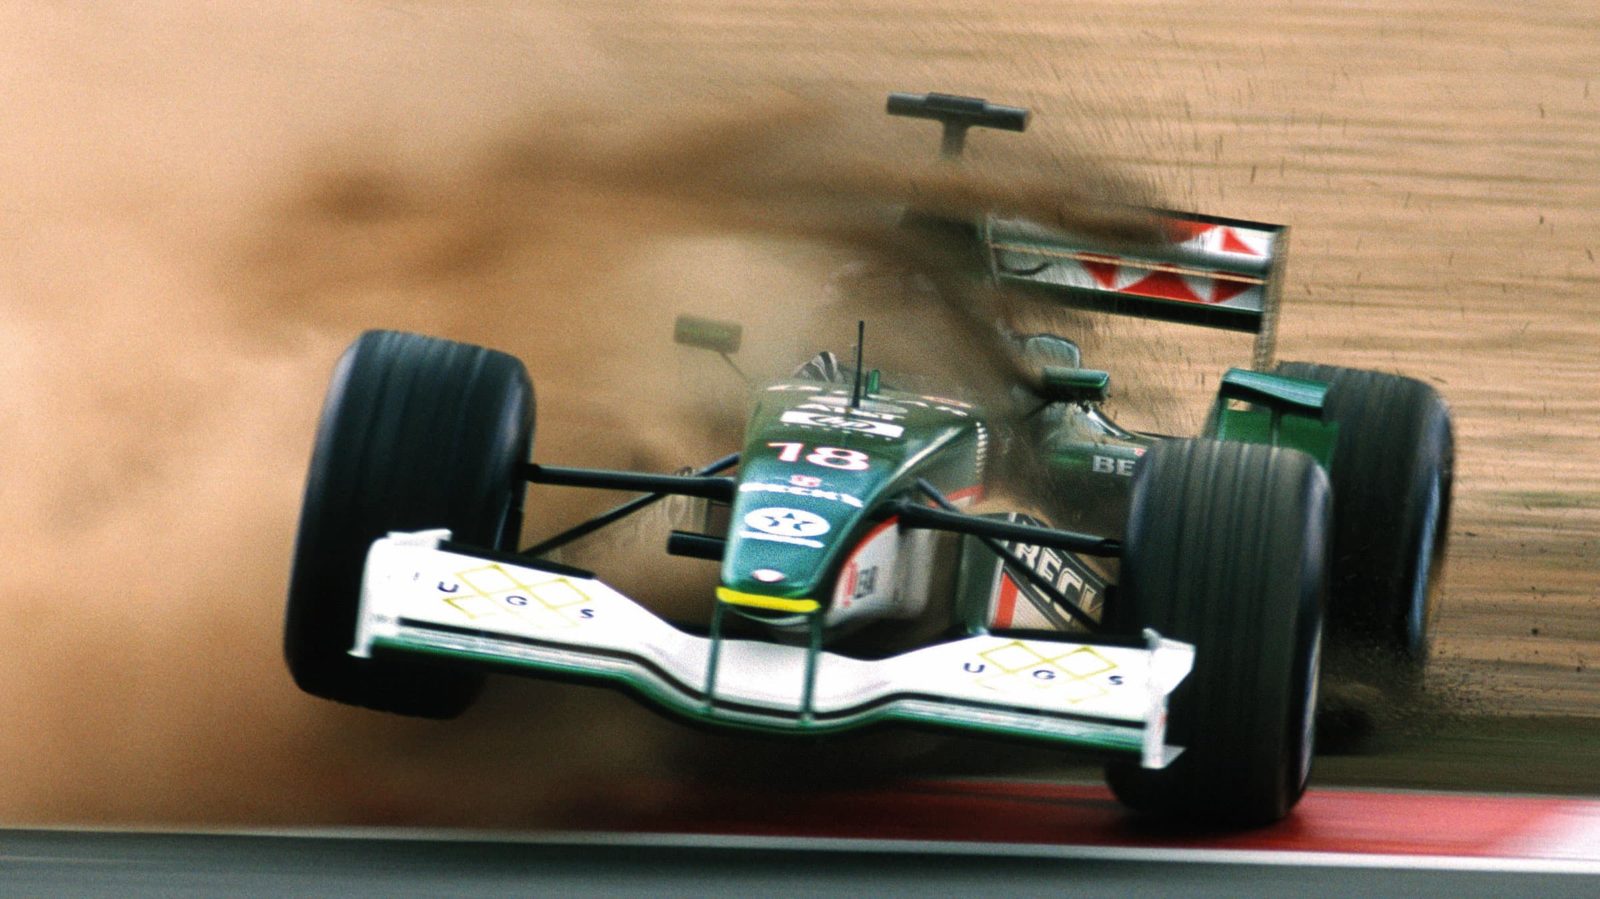 Jaguar F1 crashing through the dirt